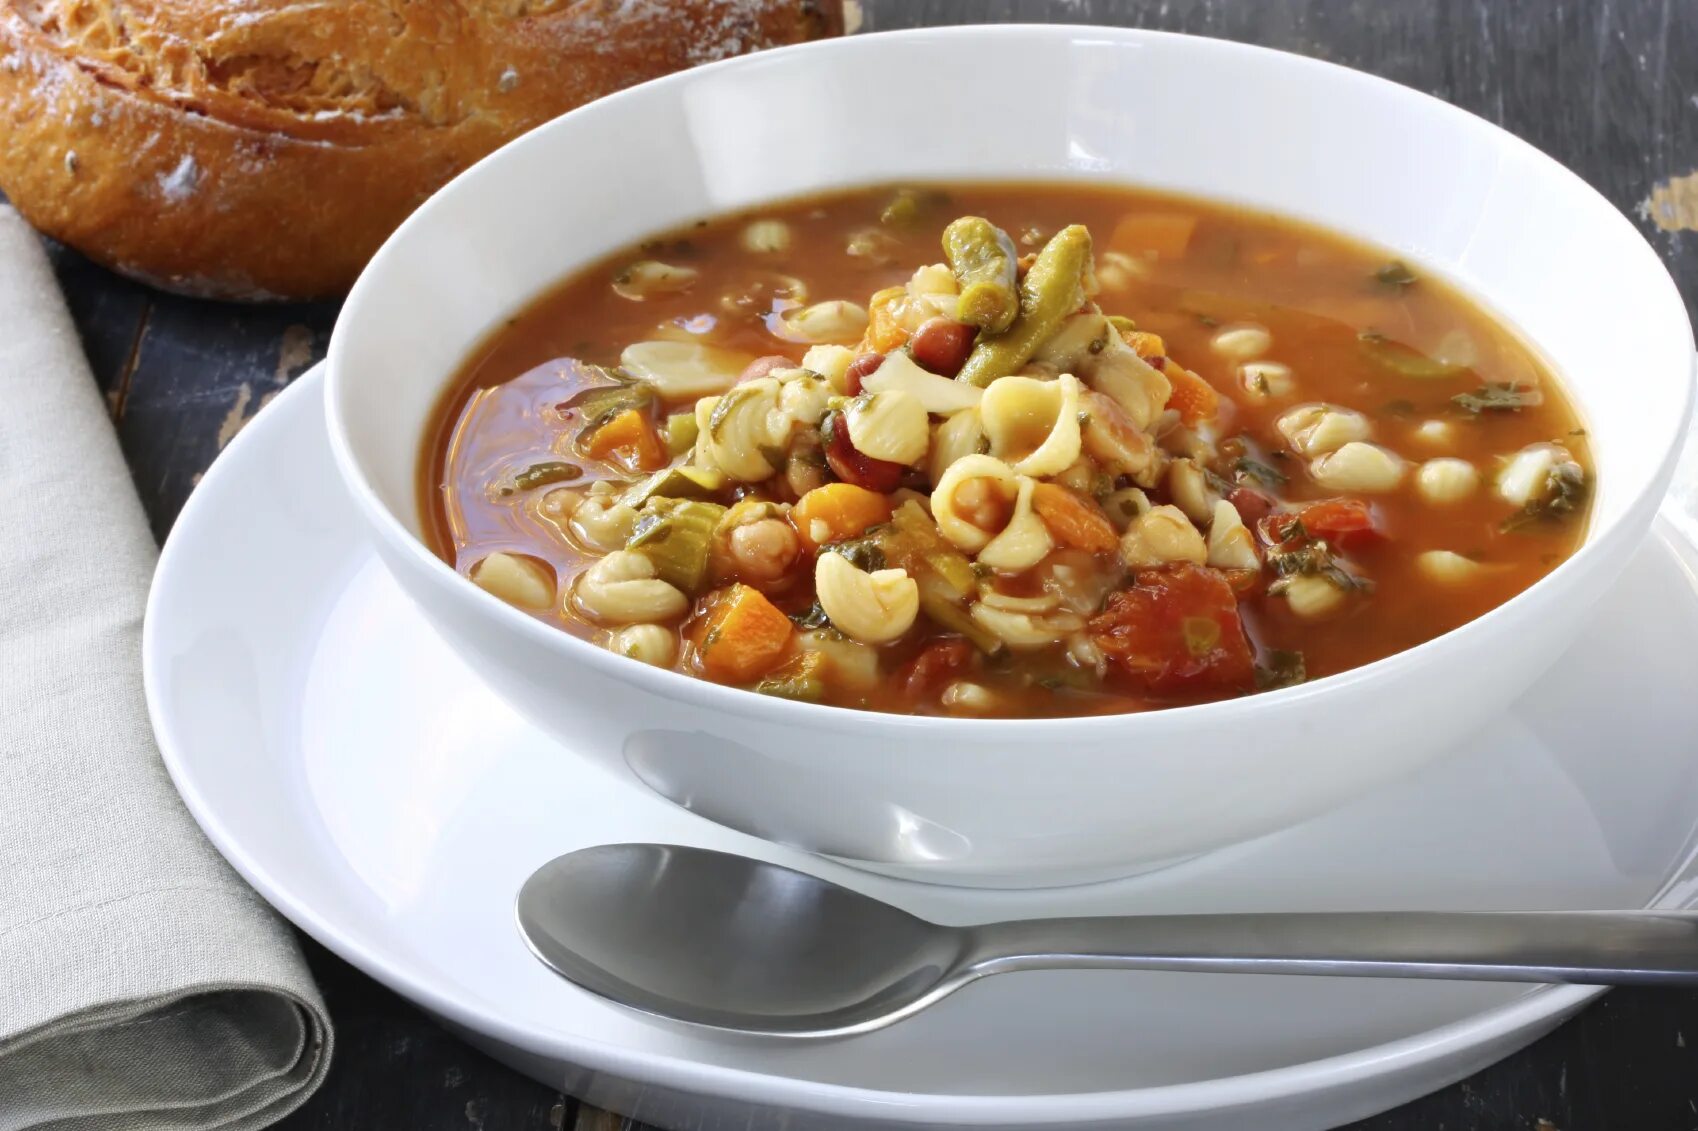 Your soup. Овощной суп минестроне. Минестроне в Италии. Минестроне итальянский. Суп минестроне (Minestrone).